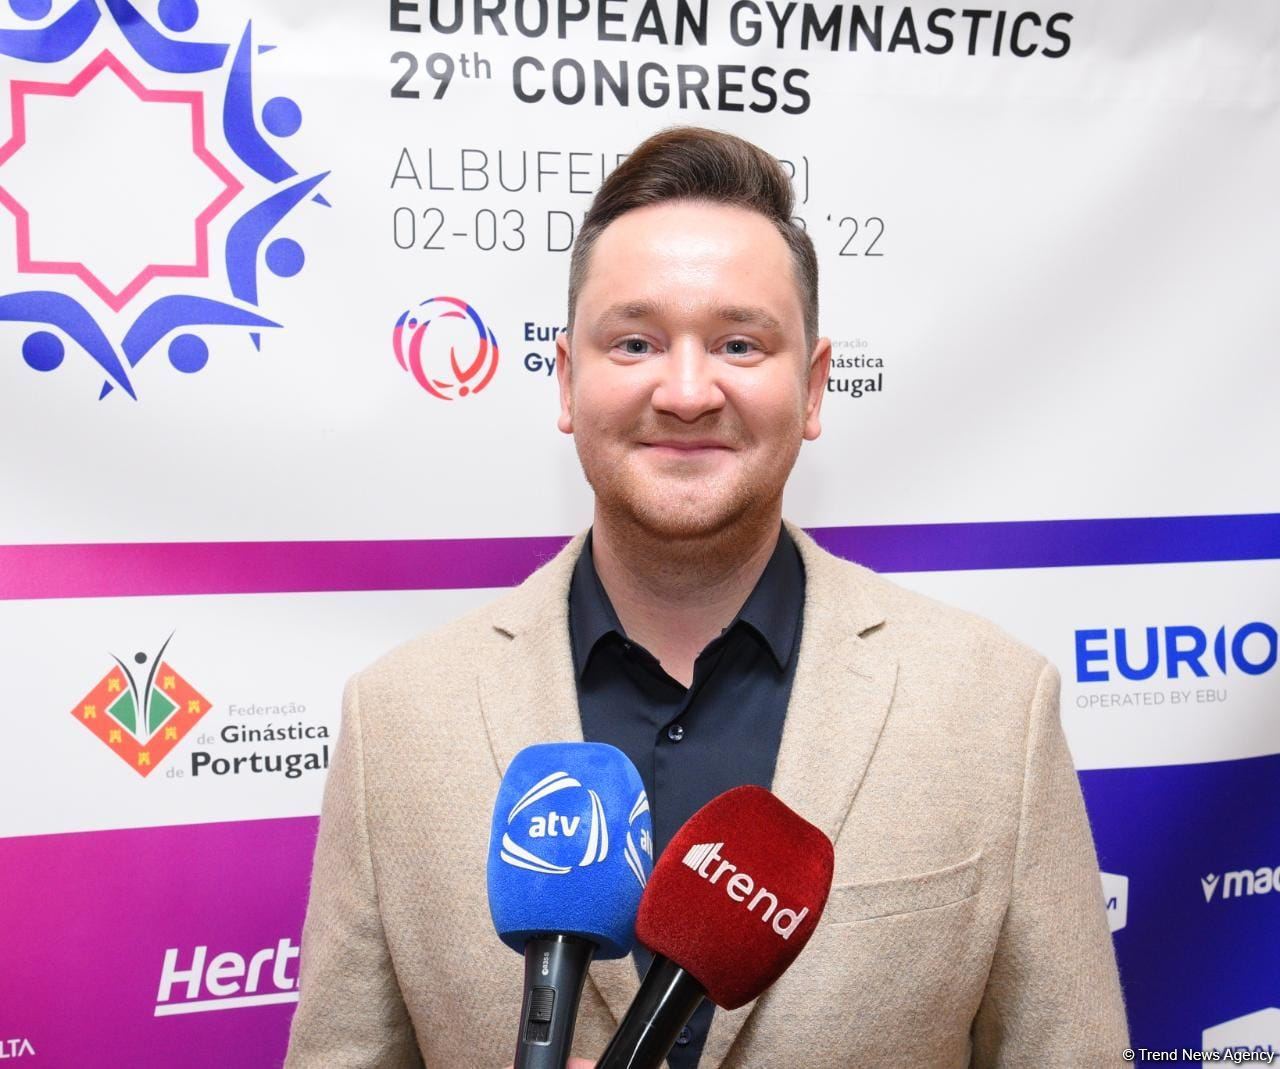 Большая честь стать членом Техкома European Gymnastics - представитель Федерации гимнастики Азербайджана Руслан Эйвазов